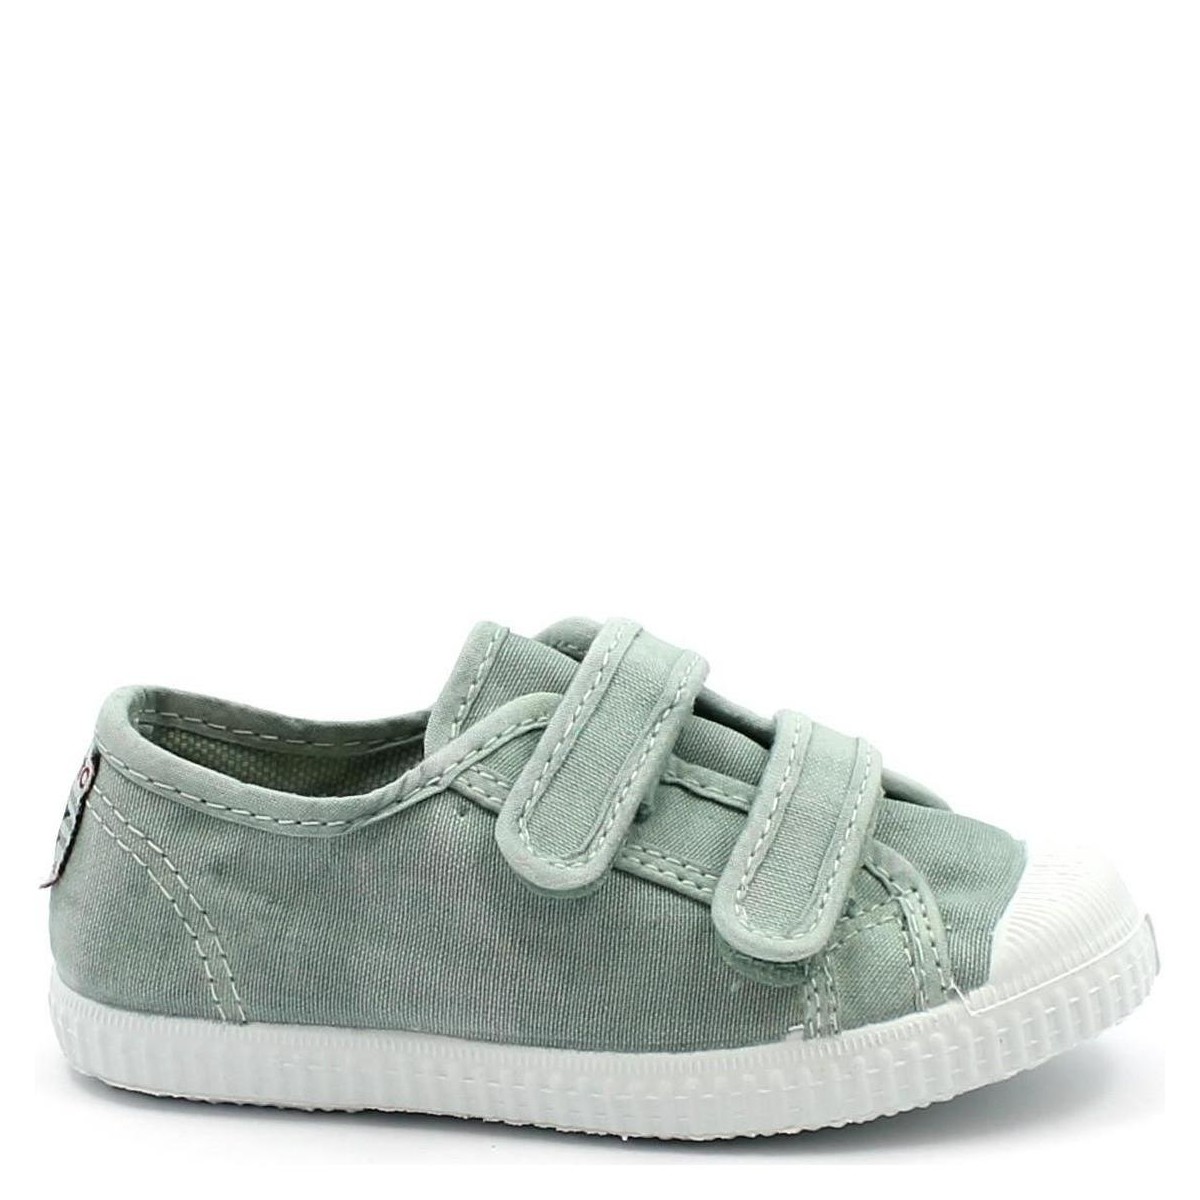 Schoenen Kinderen Lage sneakers Cienta CIE-CCC-78777-164-b Groen